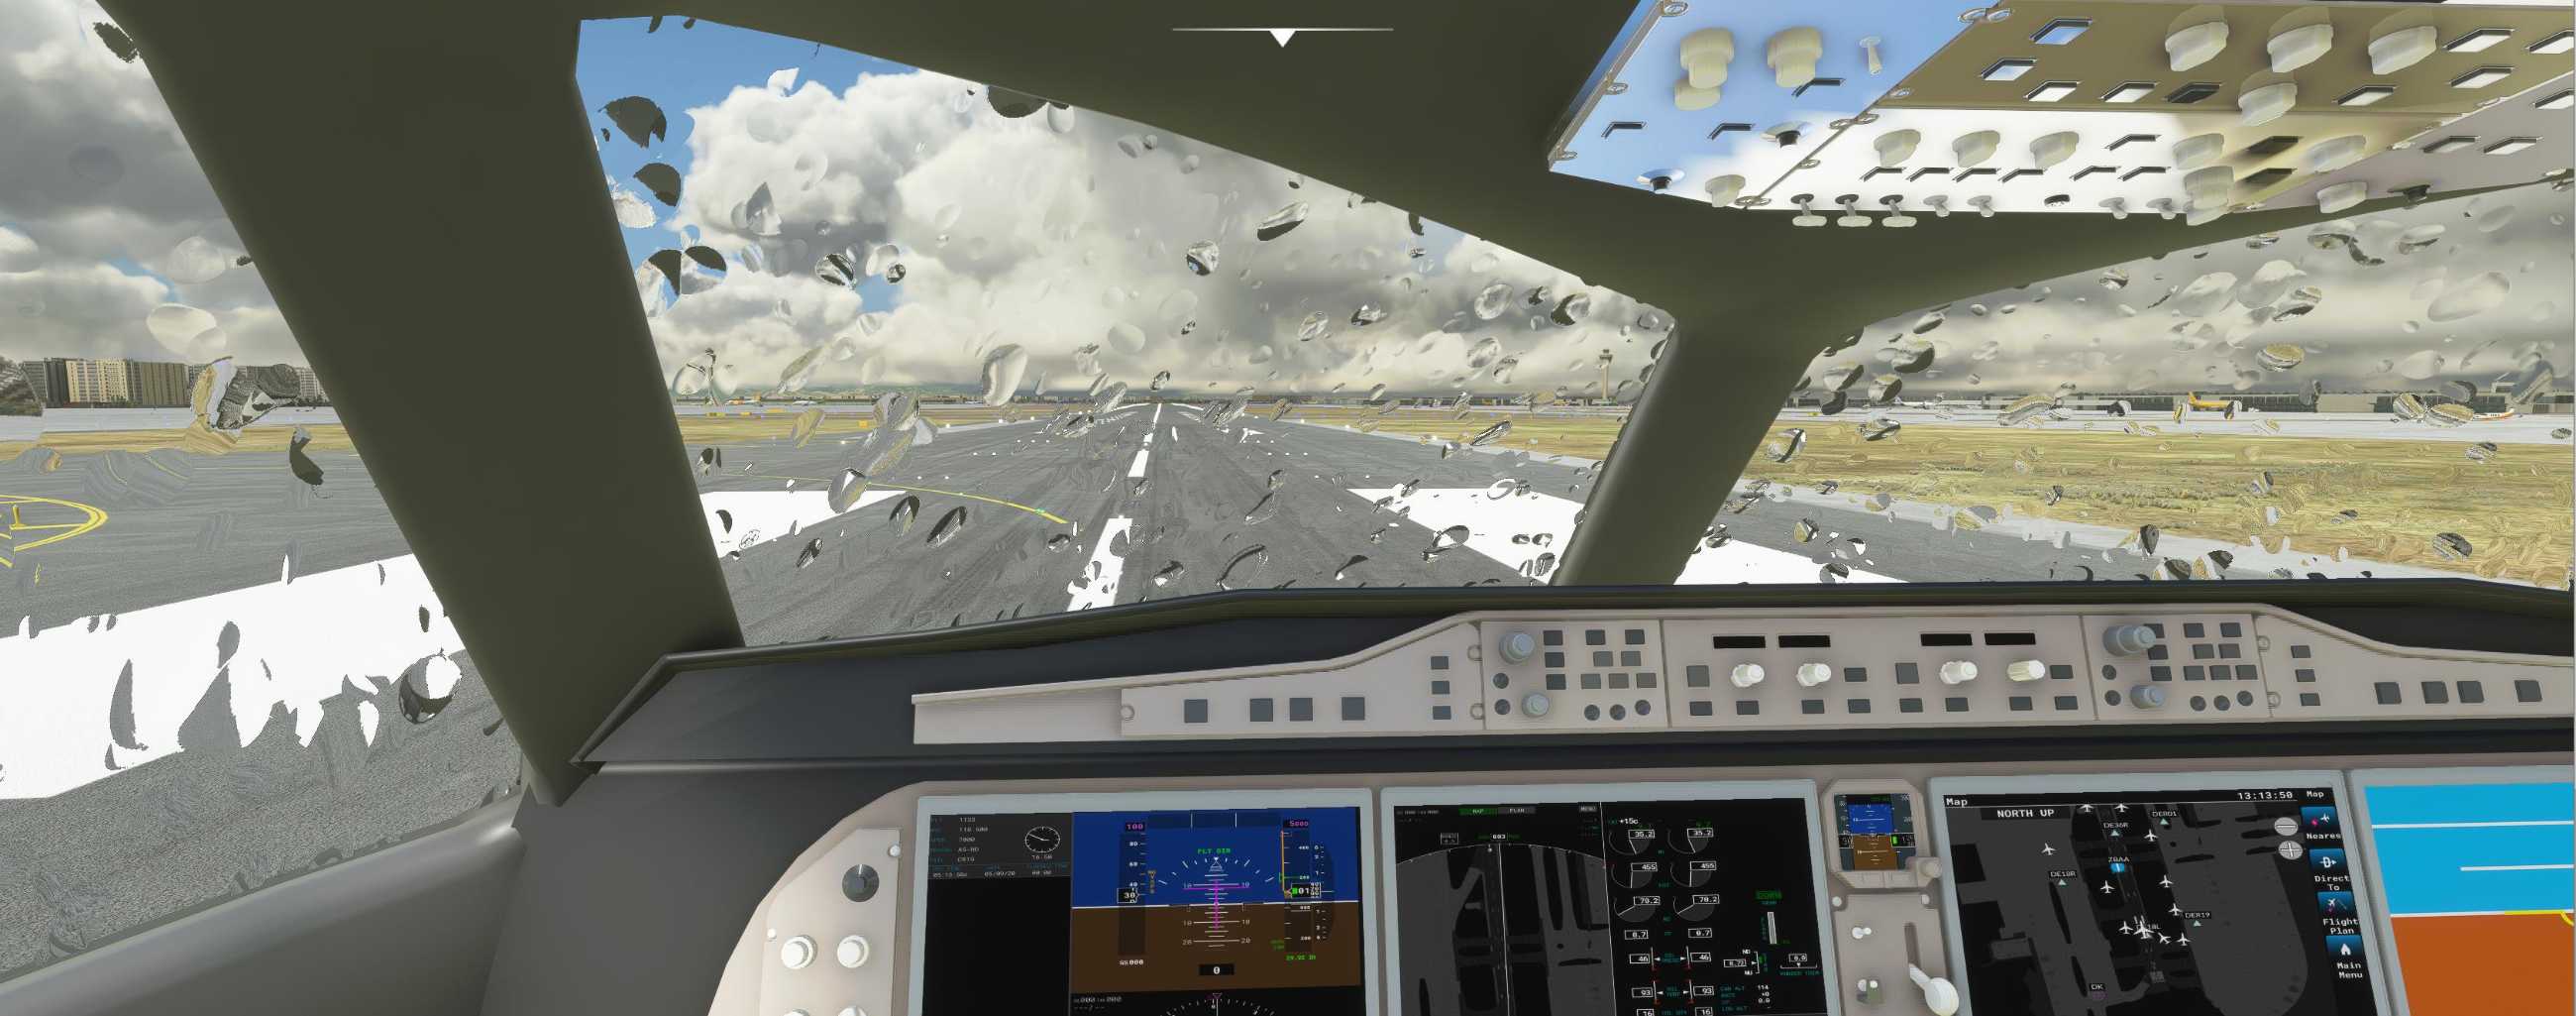 FYCYC-C919 国产大飞机机模 微软模拟飞行演示-3028 